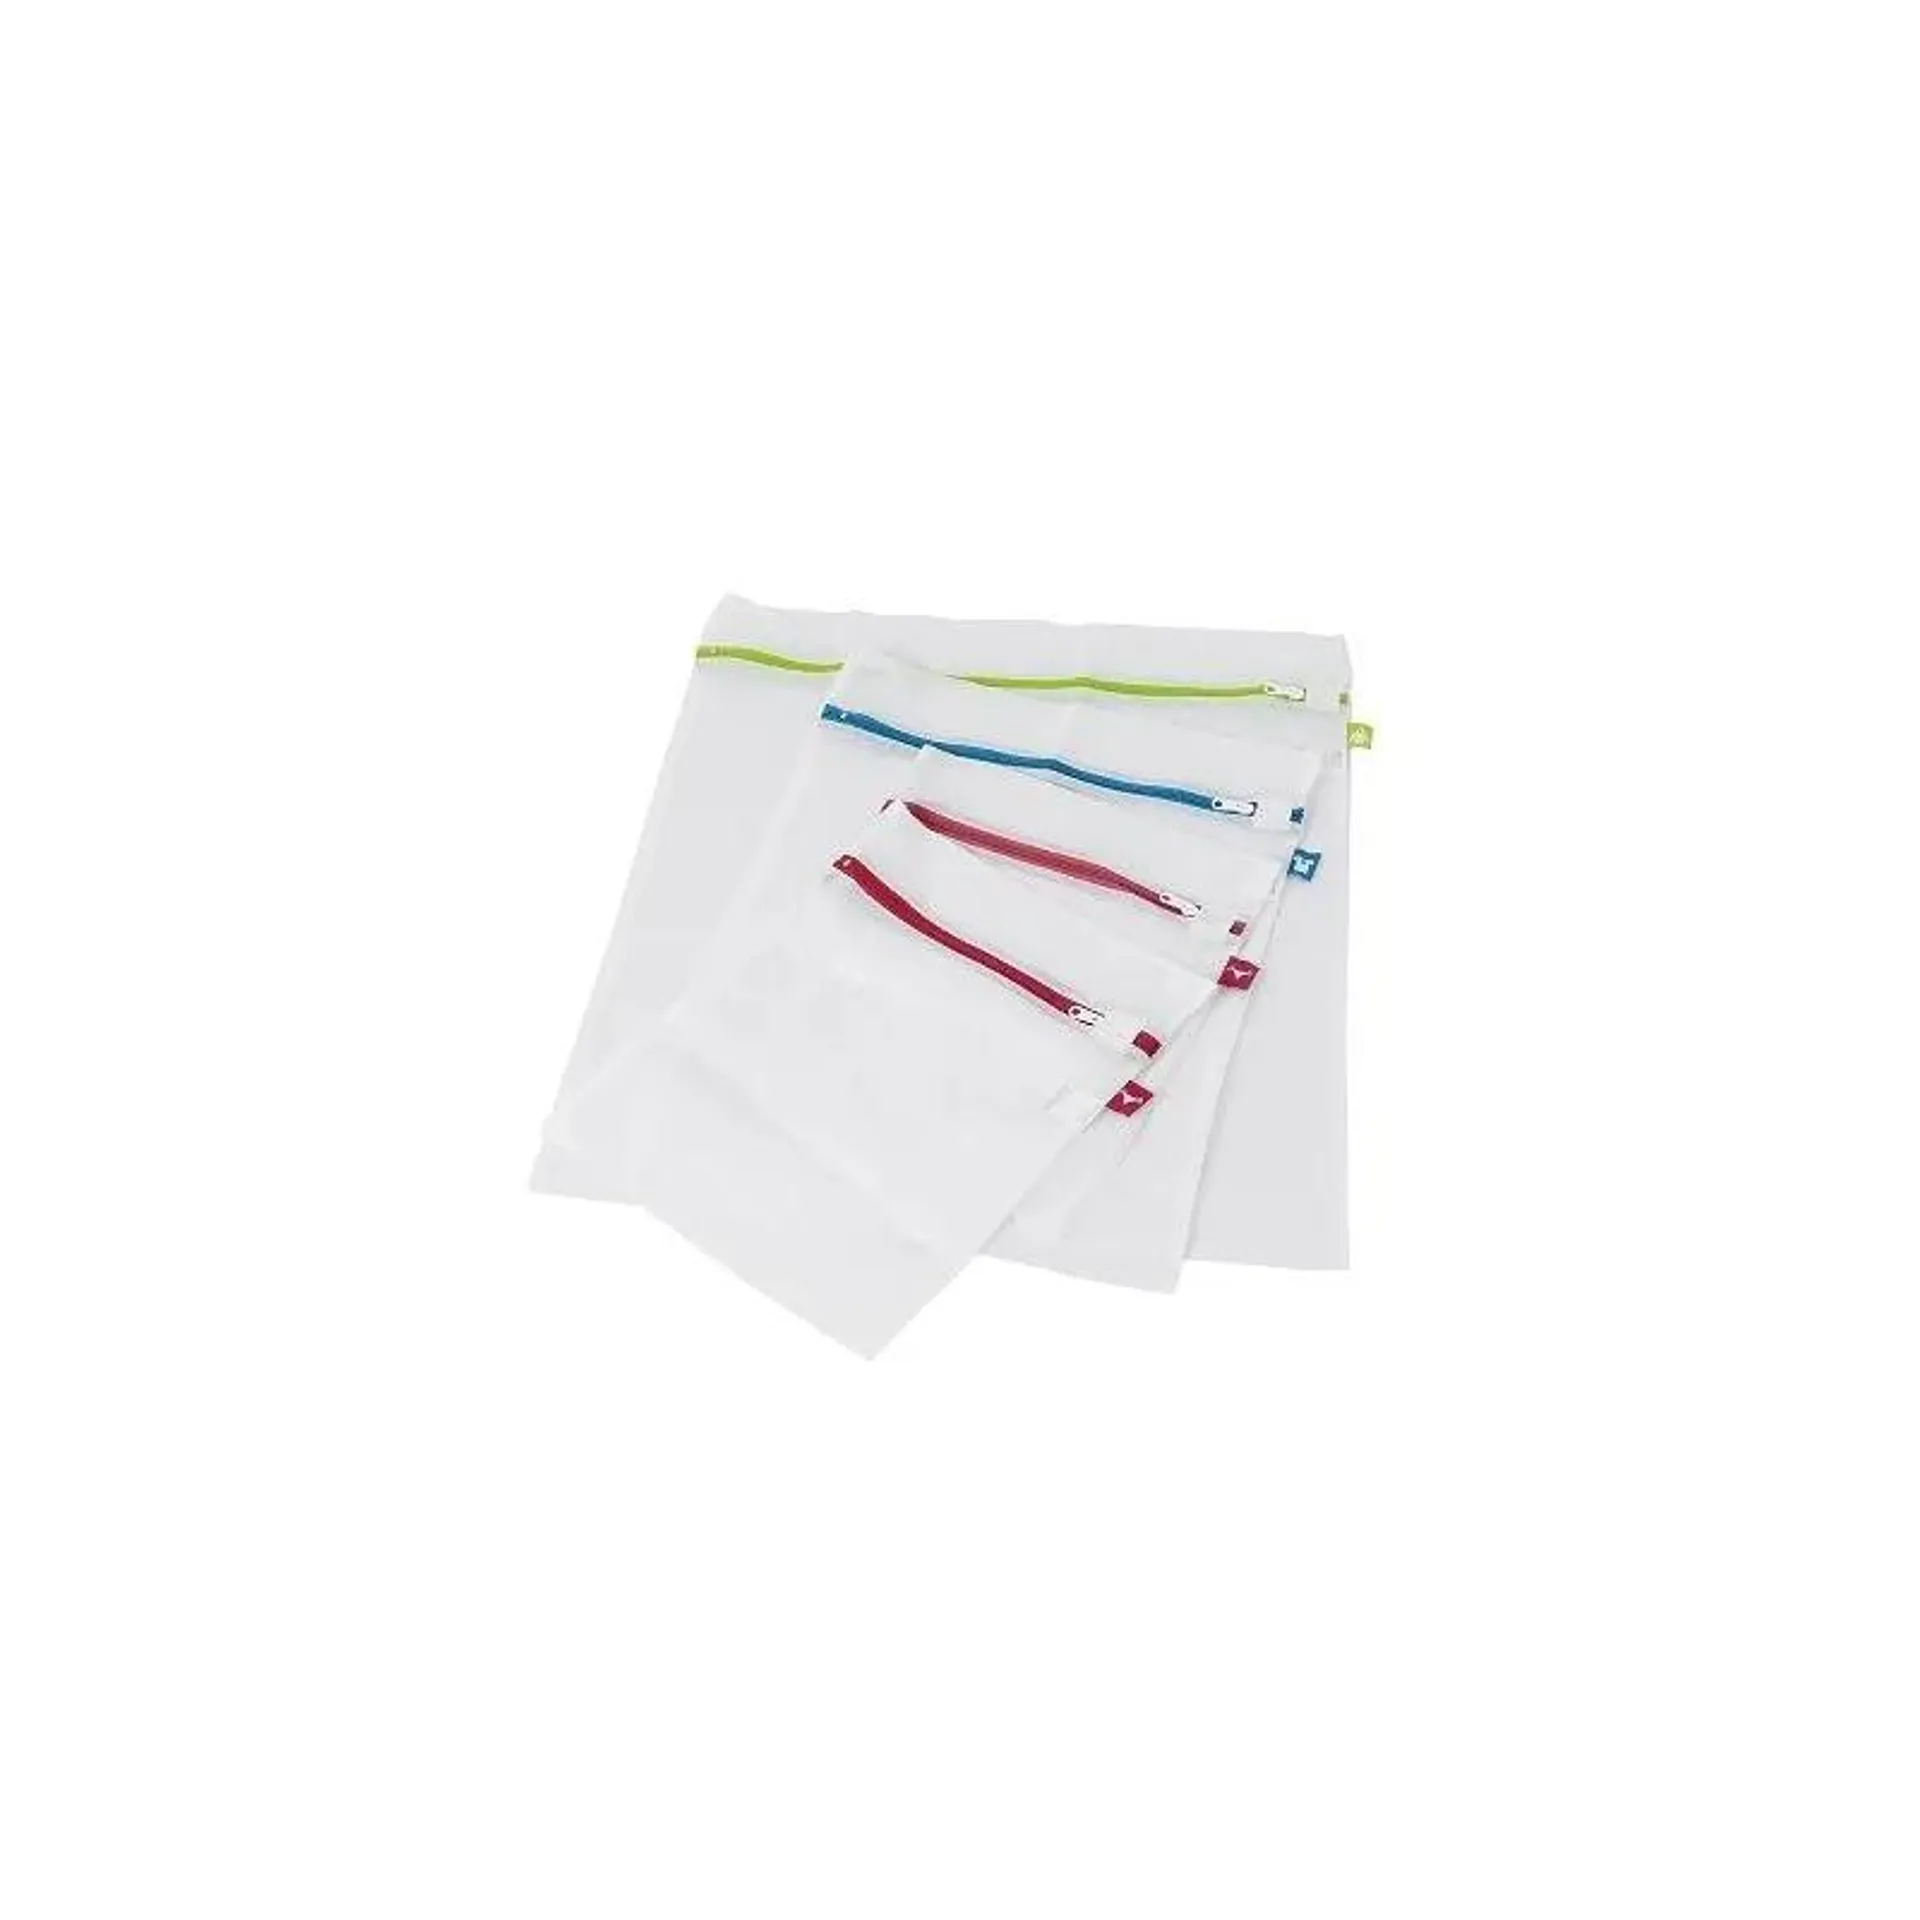 Bolsas de red para lavadora HPLA5210